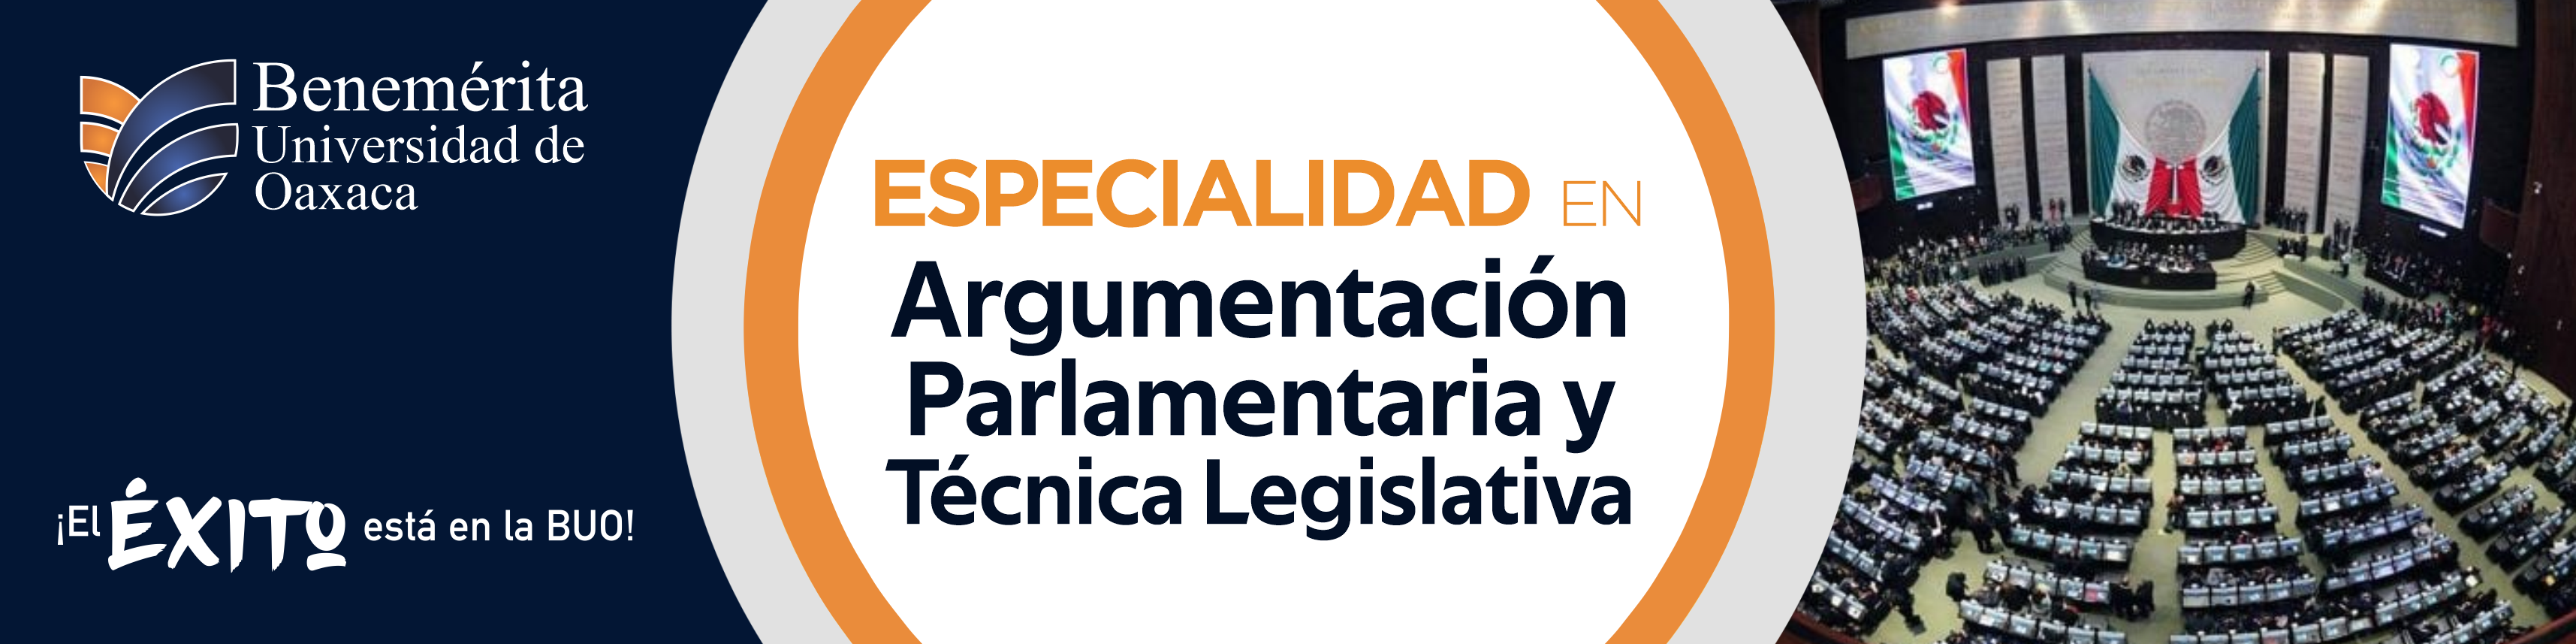 Especialidad en Argumentación Parlamentaria y Técnica Legislativa